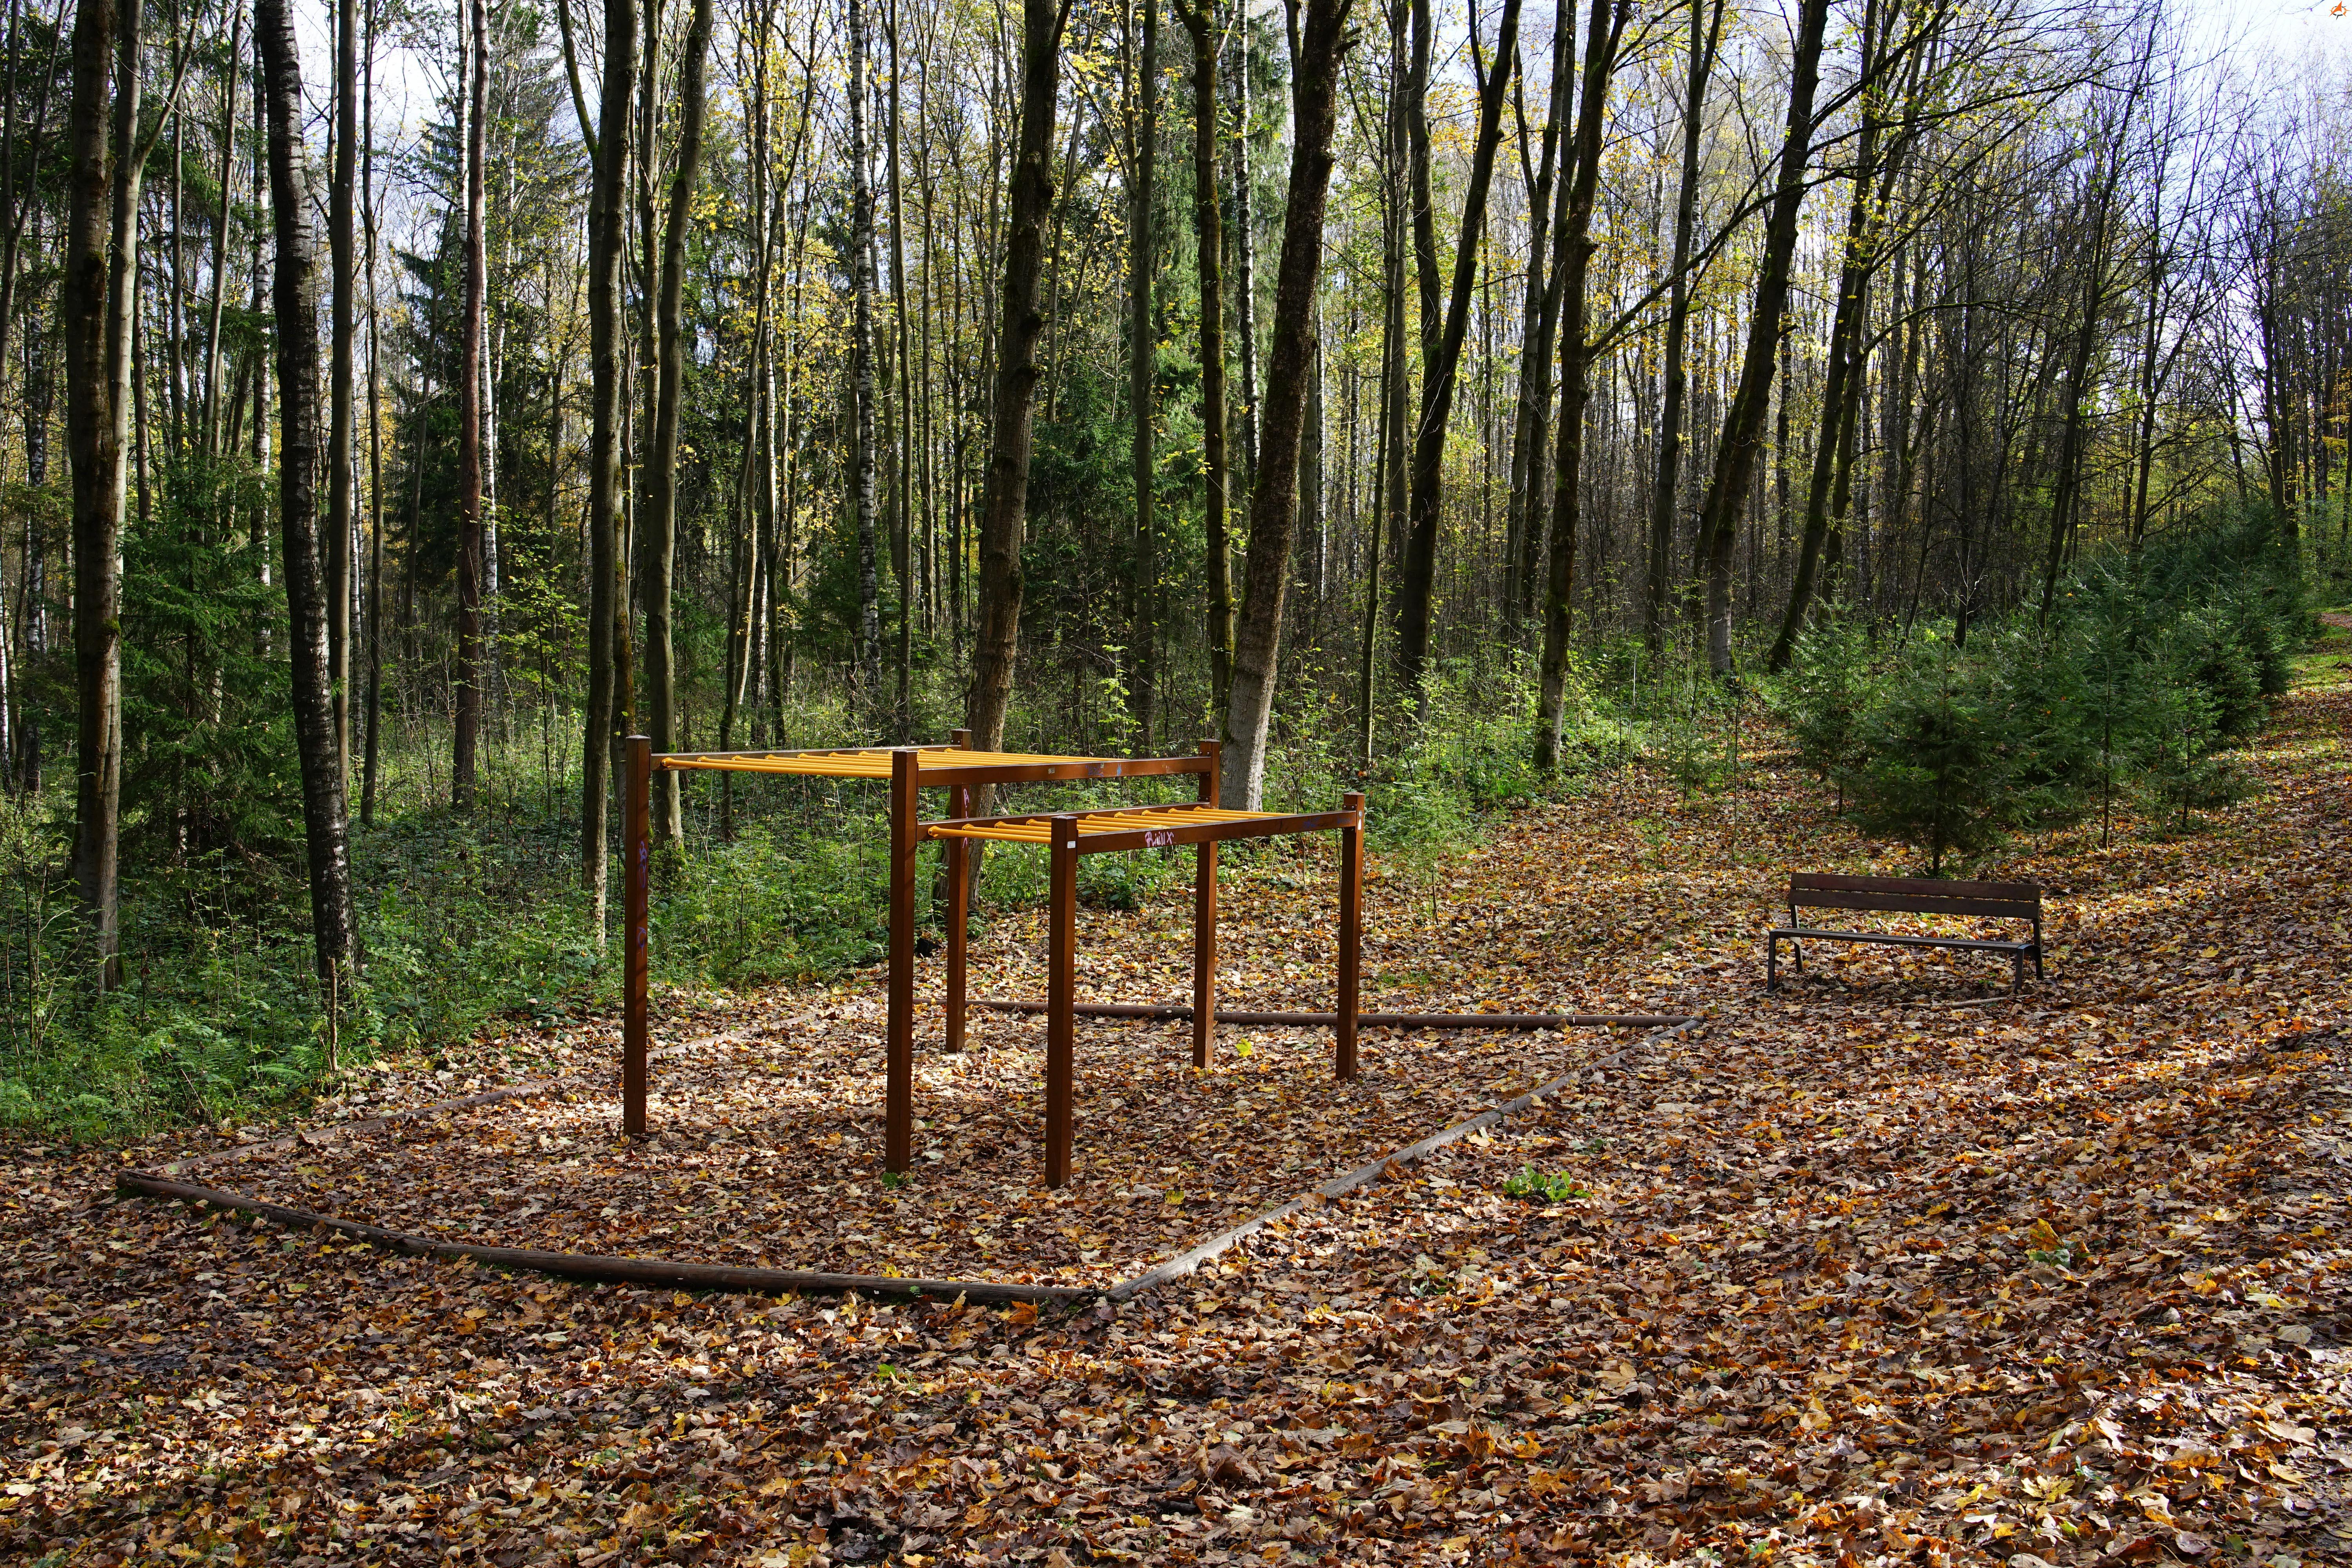 El camino que atraviesa el parque forestal se completa con varios instrumentos deportivos de madera en un entorno tranquilo.